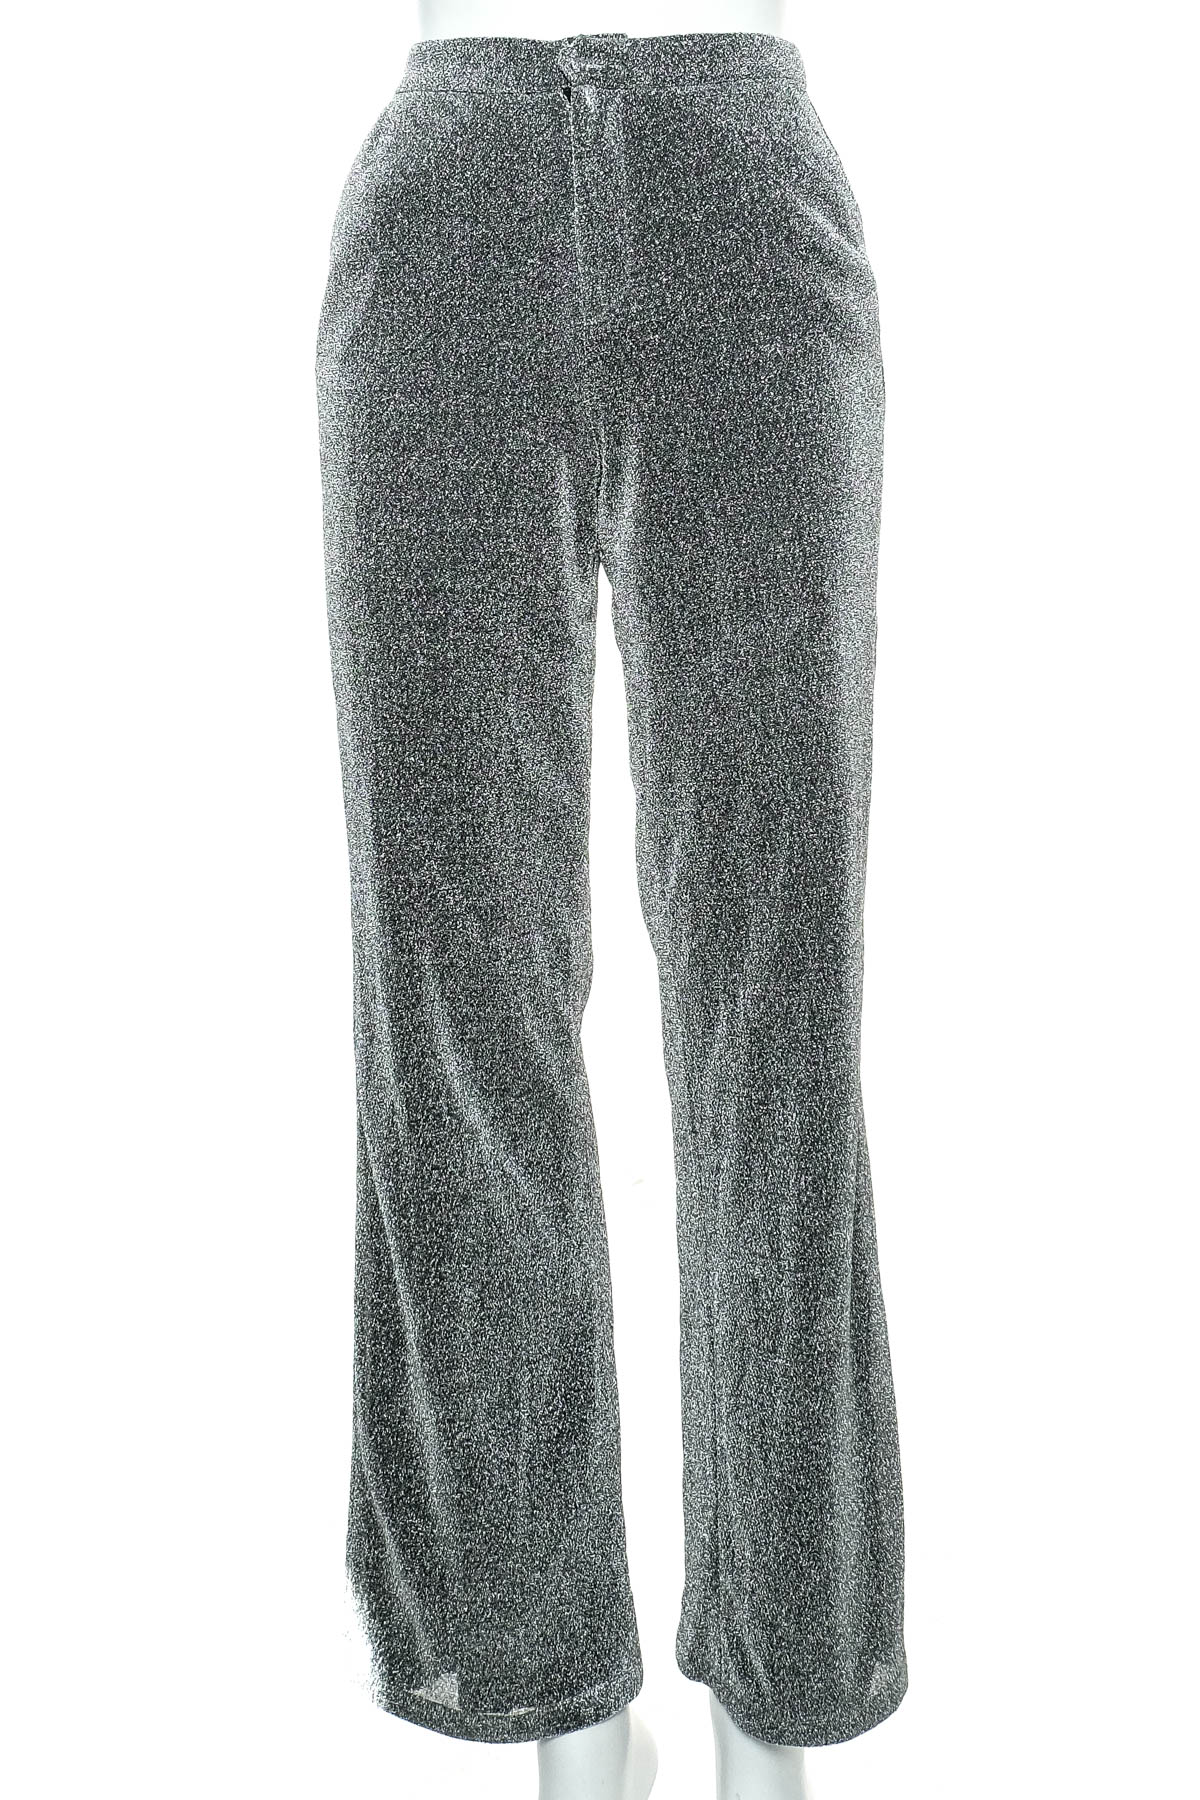 Pantaloni de damă - LINN AHLBORG x NA-KD - 0